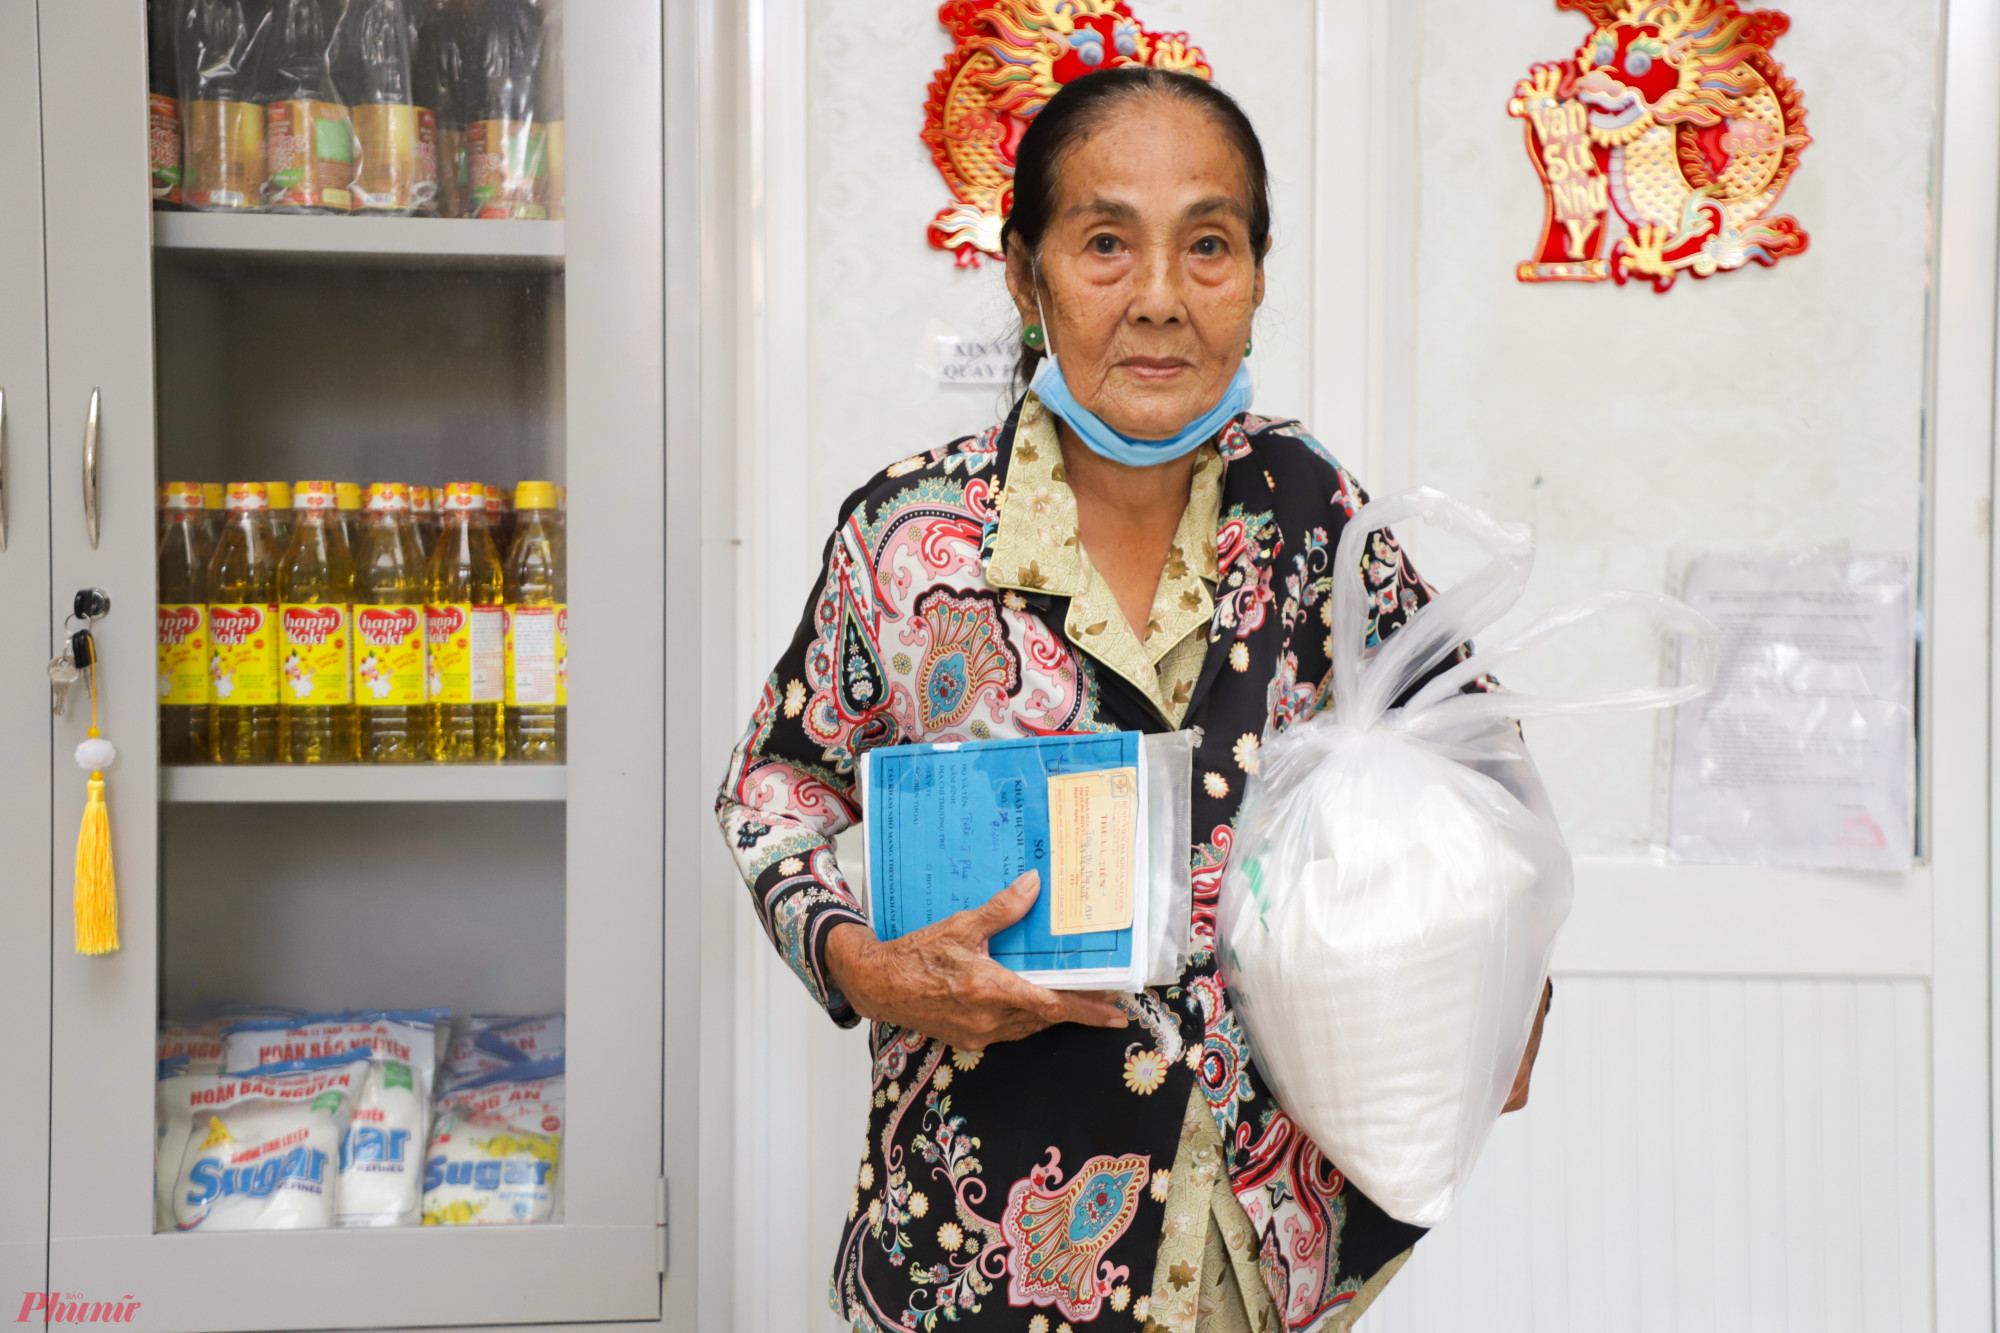 Bà Trần Thị Phú (87 tuổi) vui mừng khi được nhận phần quà hỗ trợ từ các bác sĩ của bệnh viện đa khoa Sài Gòn. Bà Phú cho biết, các con cái đều khó khăn nên bà thuê trọ sống một mình ở quận 7, hàng ngày đi phụ bán nước mưu sinh.